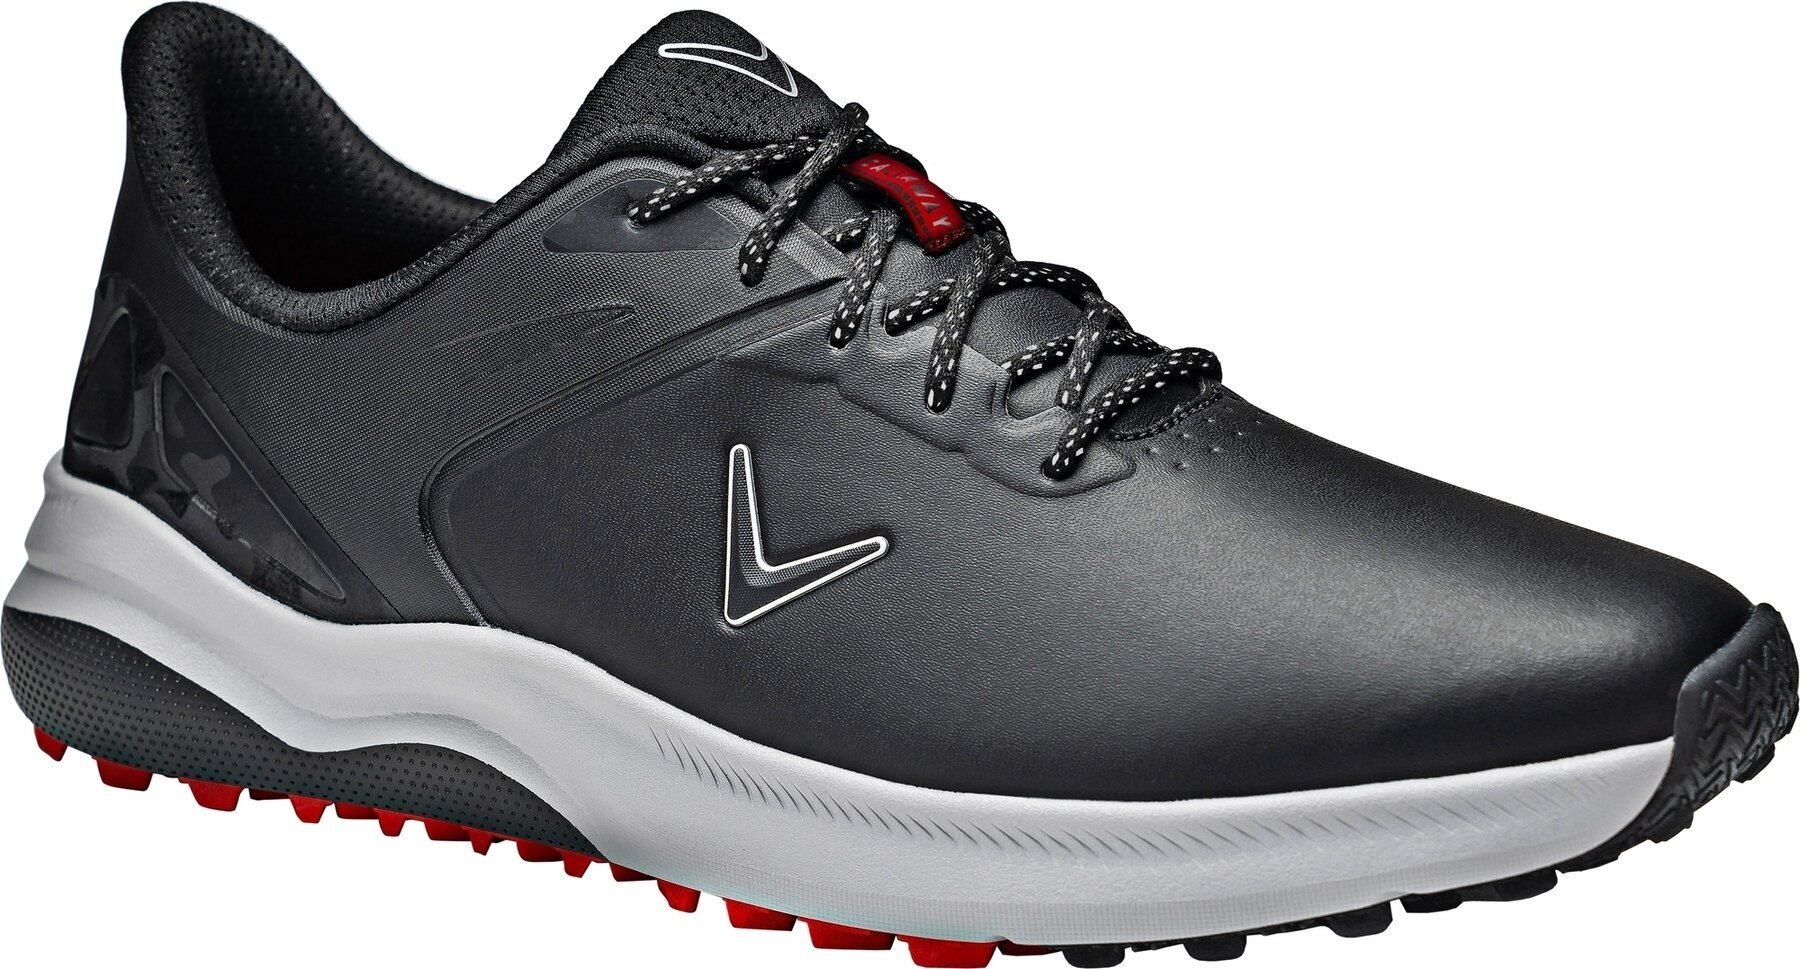 Ανδρικό Παπούτσι για Γκολφ Callaway Lazer Mens Golf Shoes Μαύρο 41